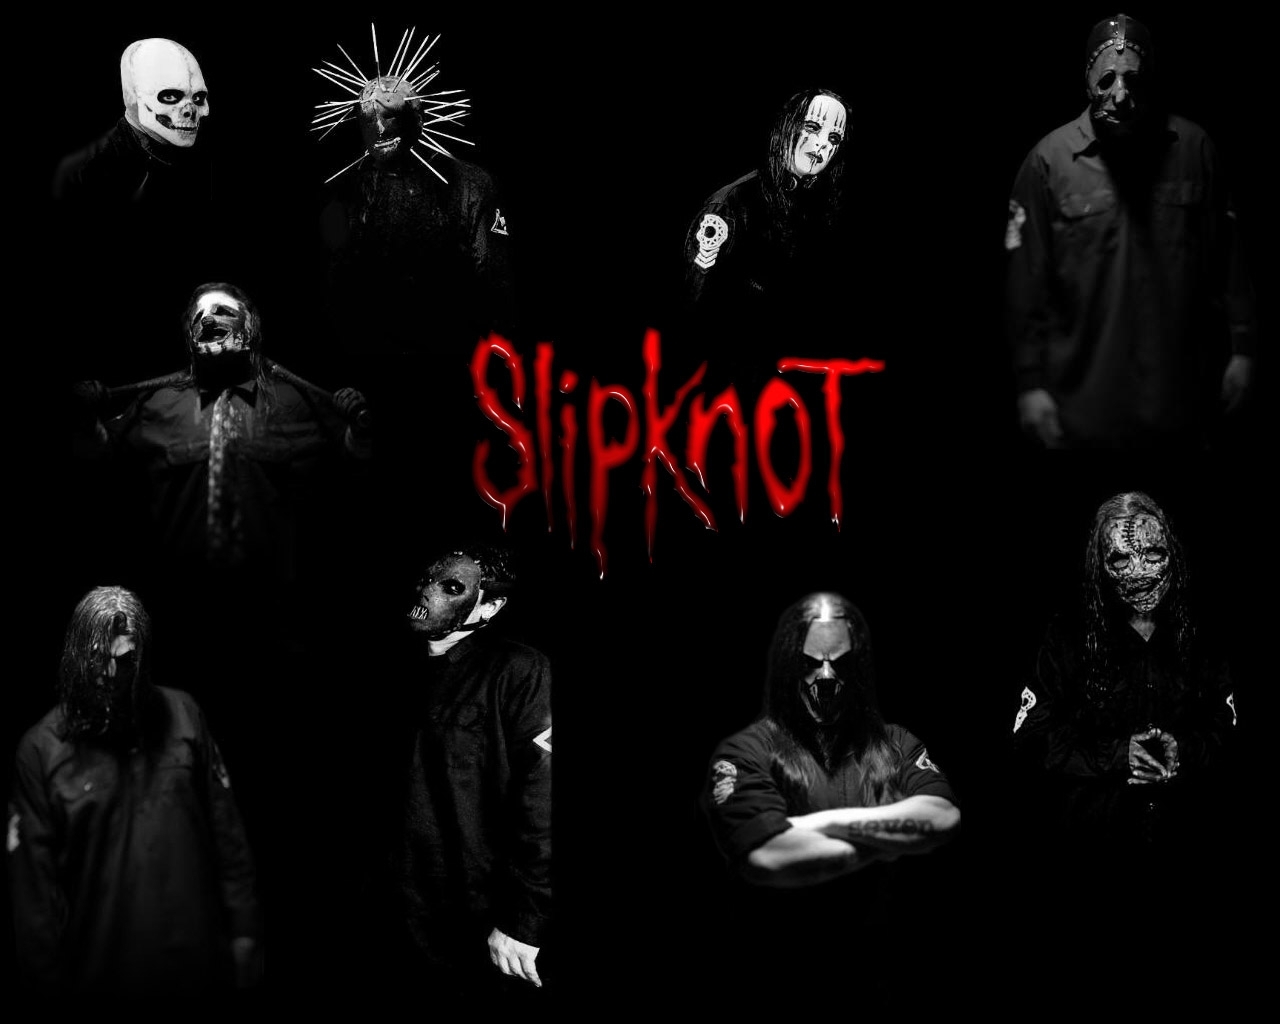 Popular Slipknot Image for Phone